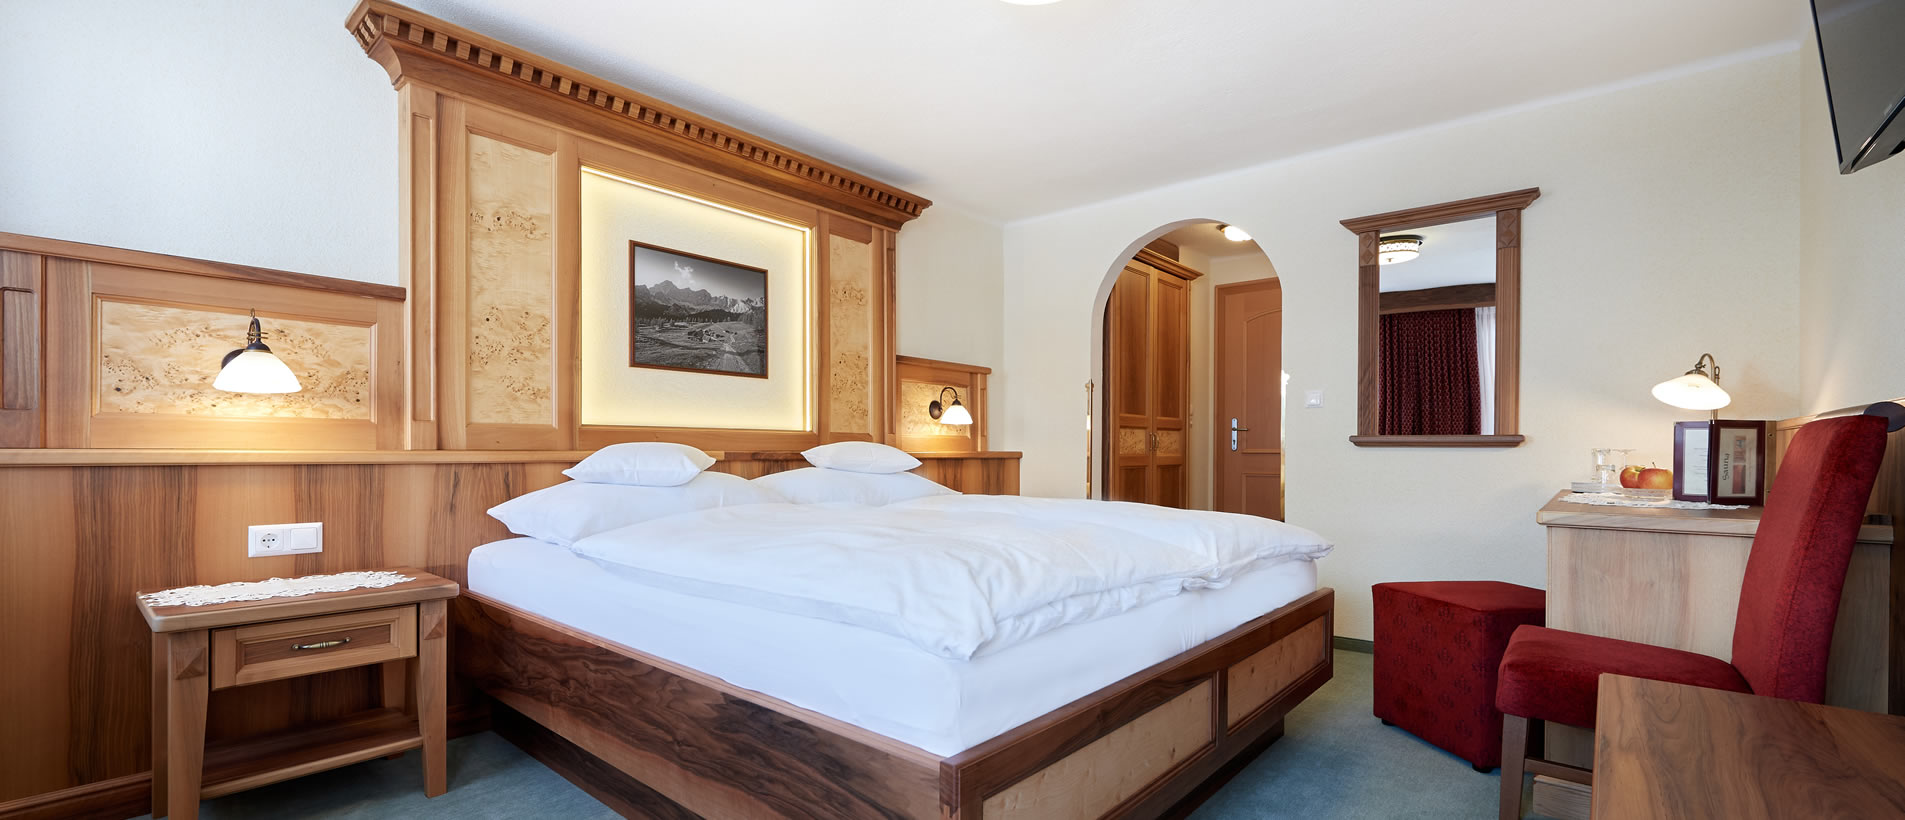 Komfortables Zimmer in der Pension Bartlbauer in der Region Schladming-Dachstein